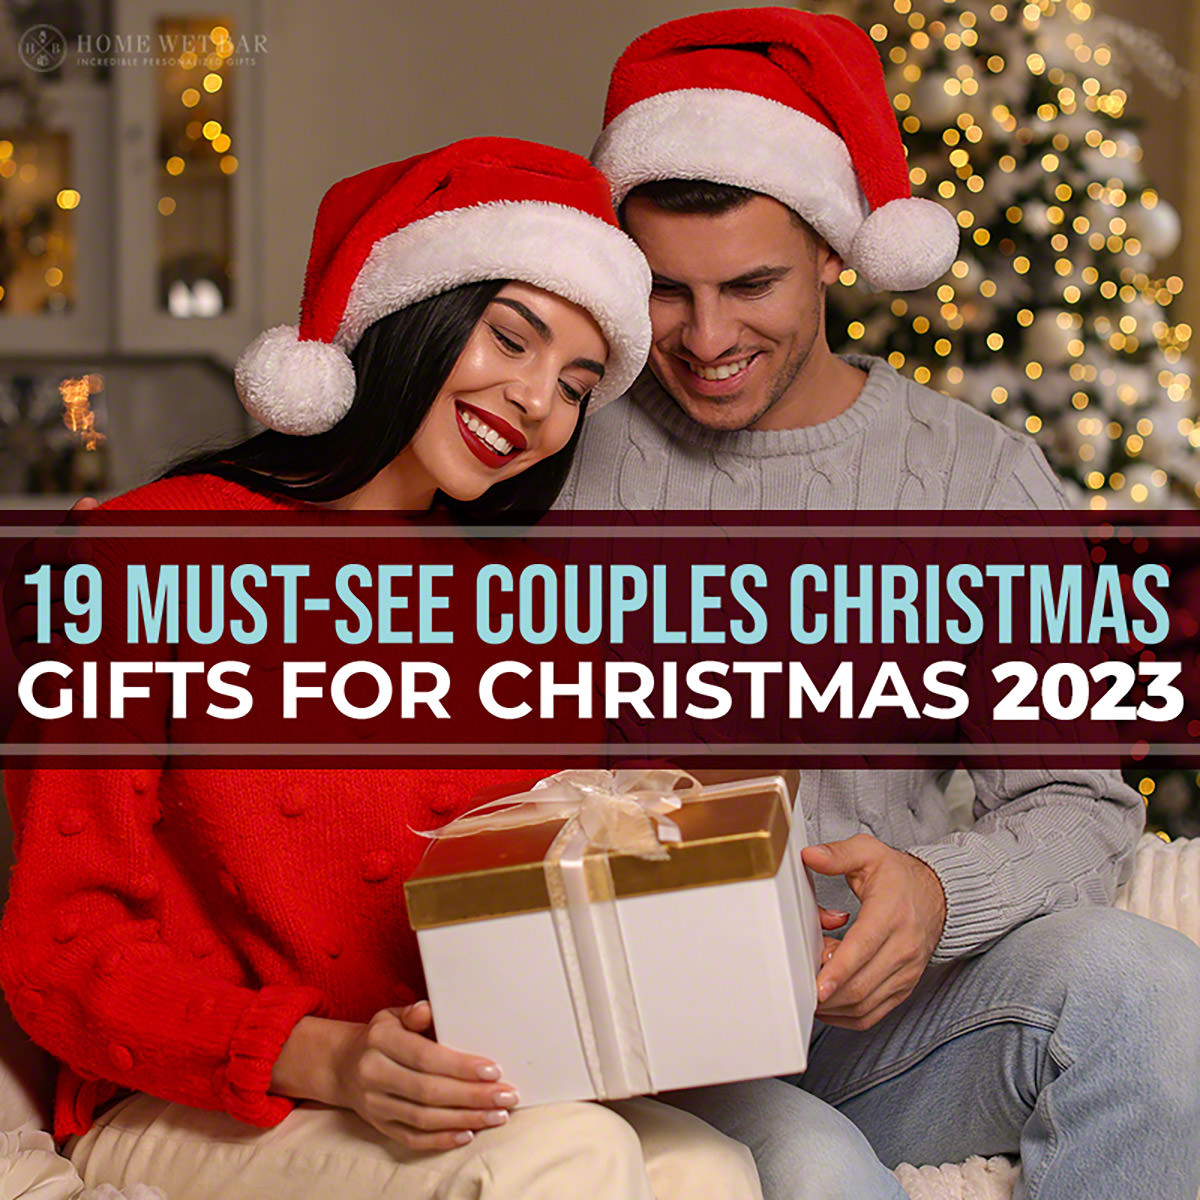 25 Wonderful Christmas Gift Ideas For Engaged Couple - Blog